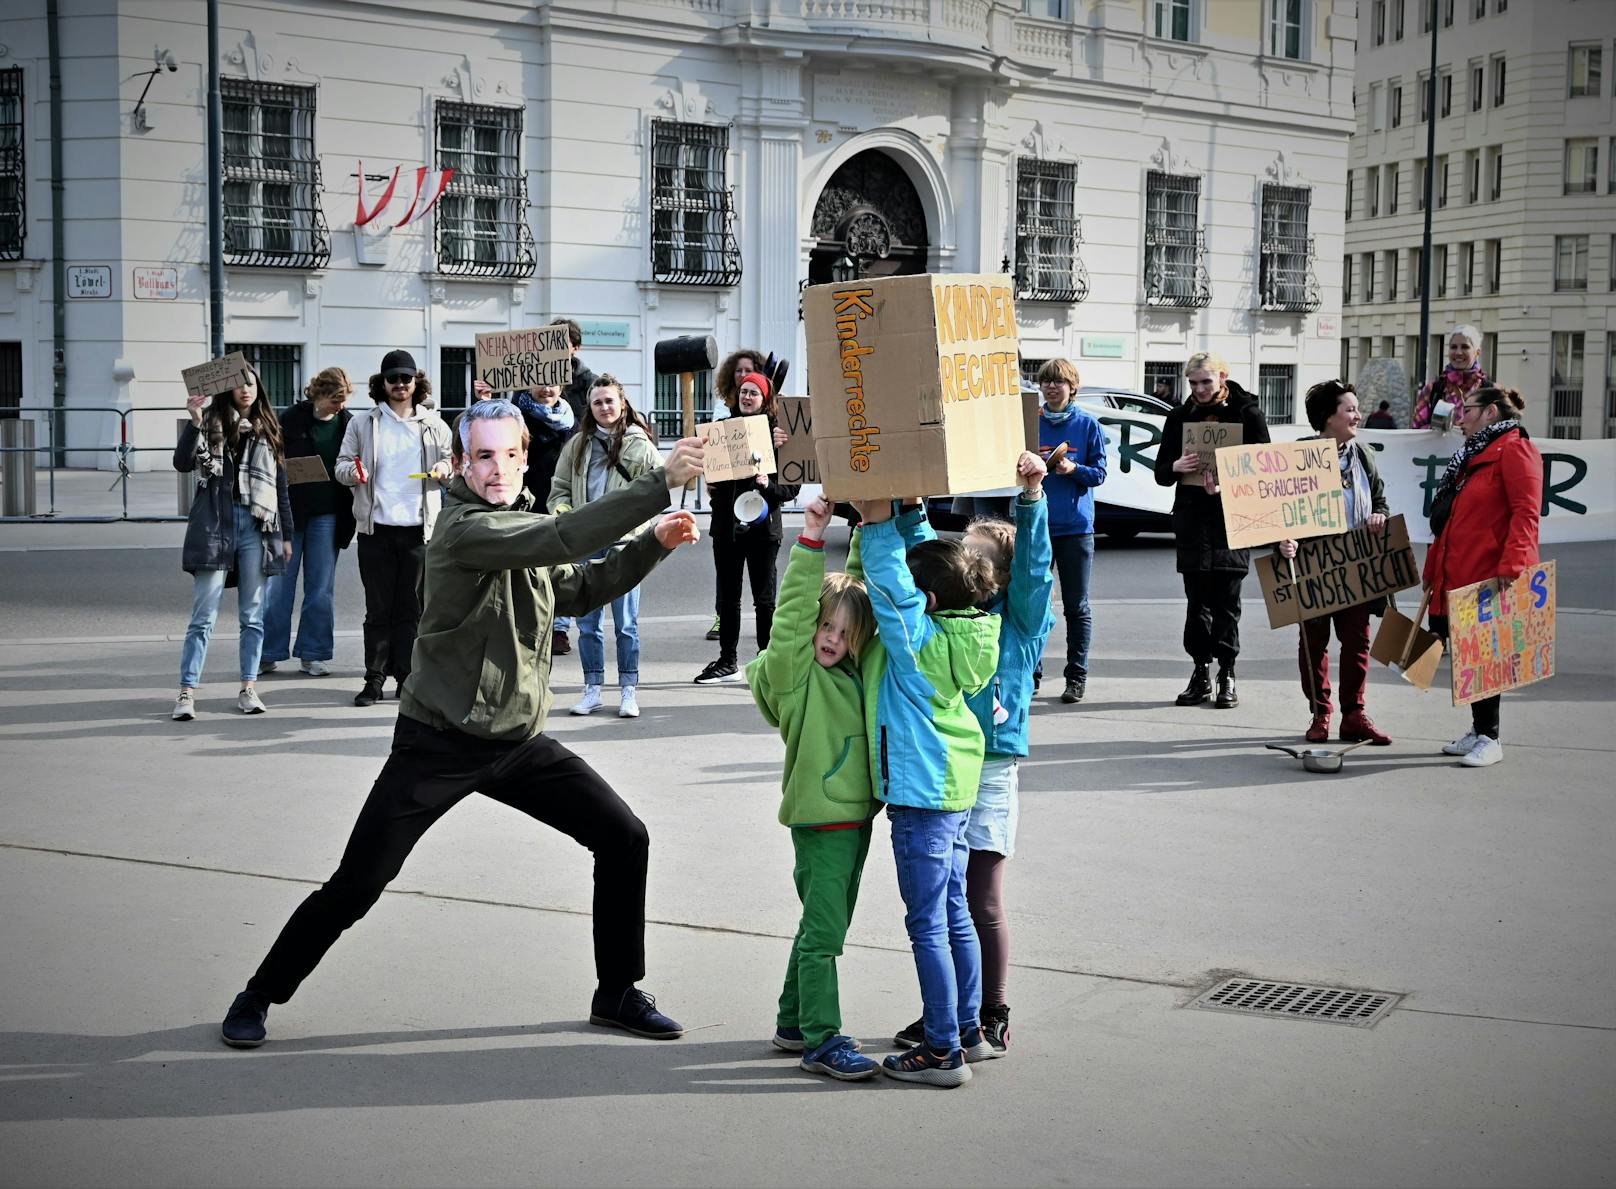 Auch die Kinderrechte in Österreich würden "in katastrophalem Ausmaß missachtet", so Fridays For Future Austria.